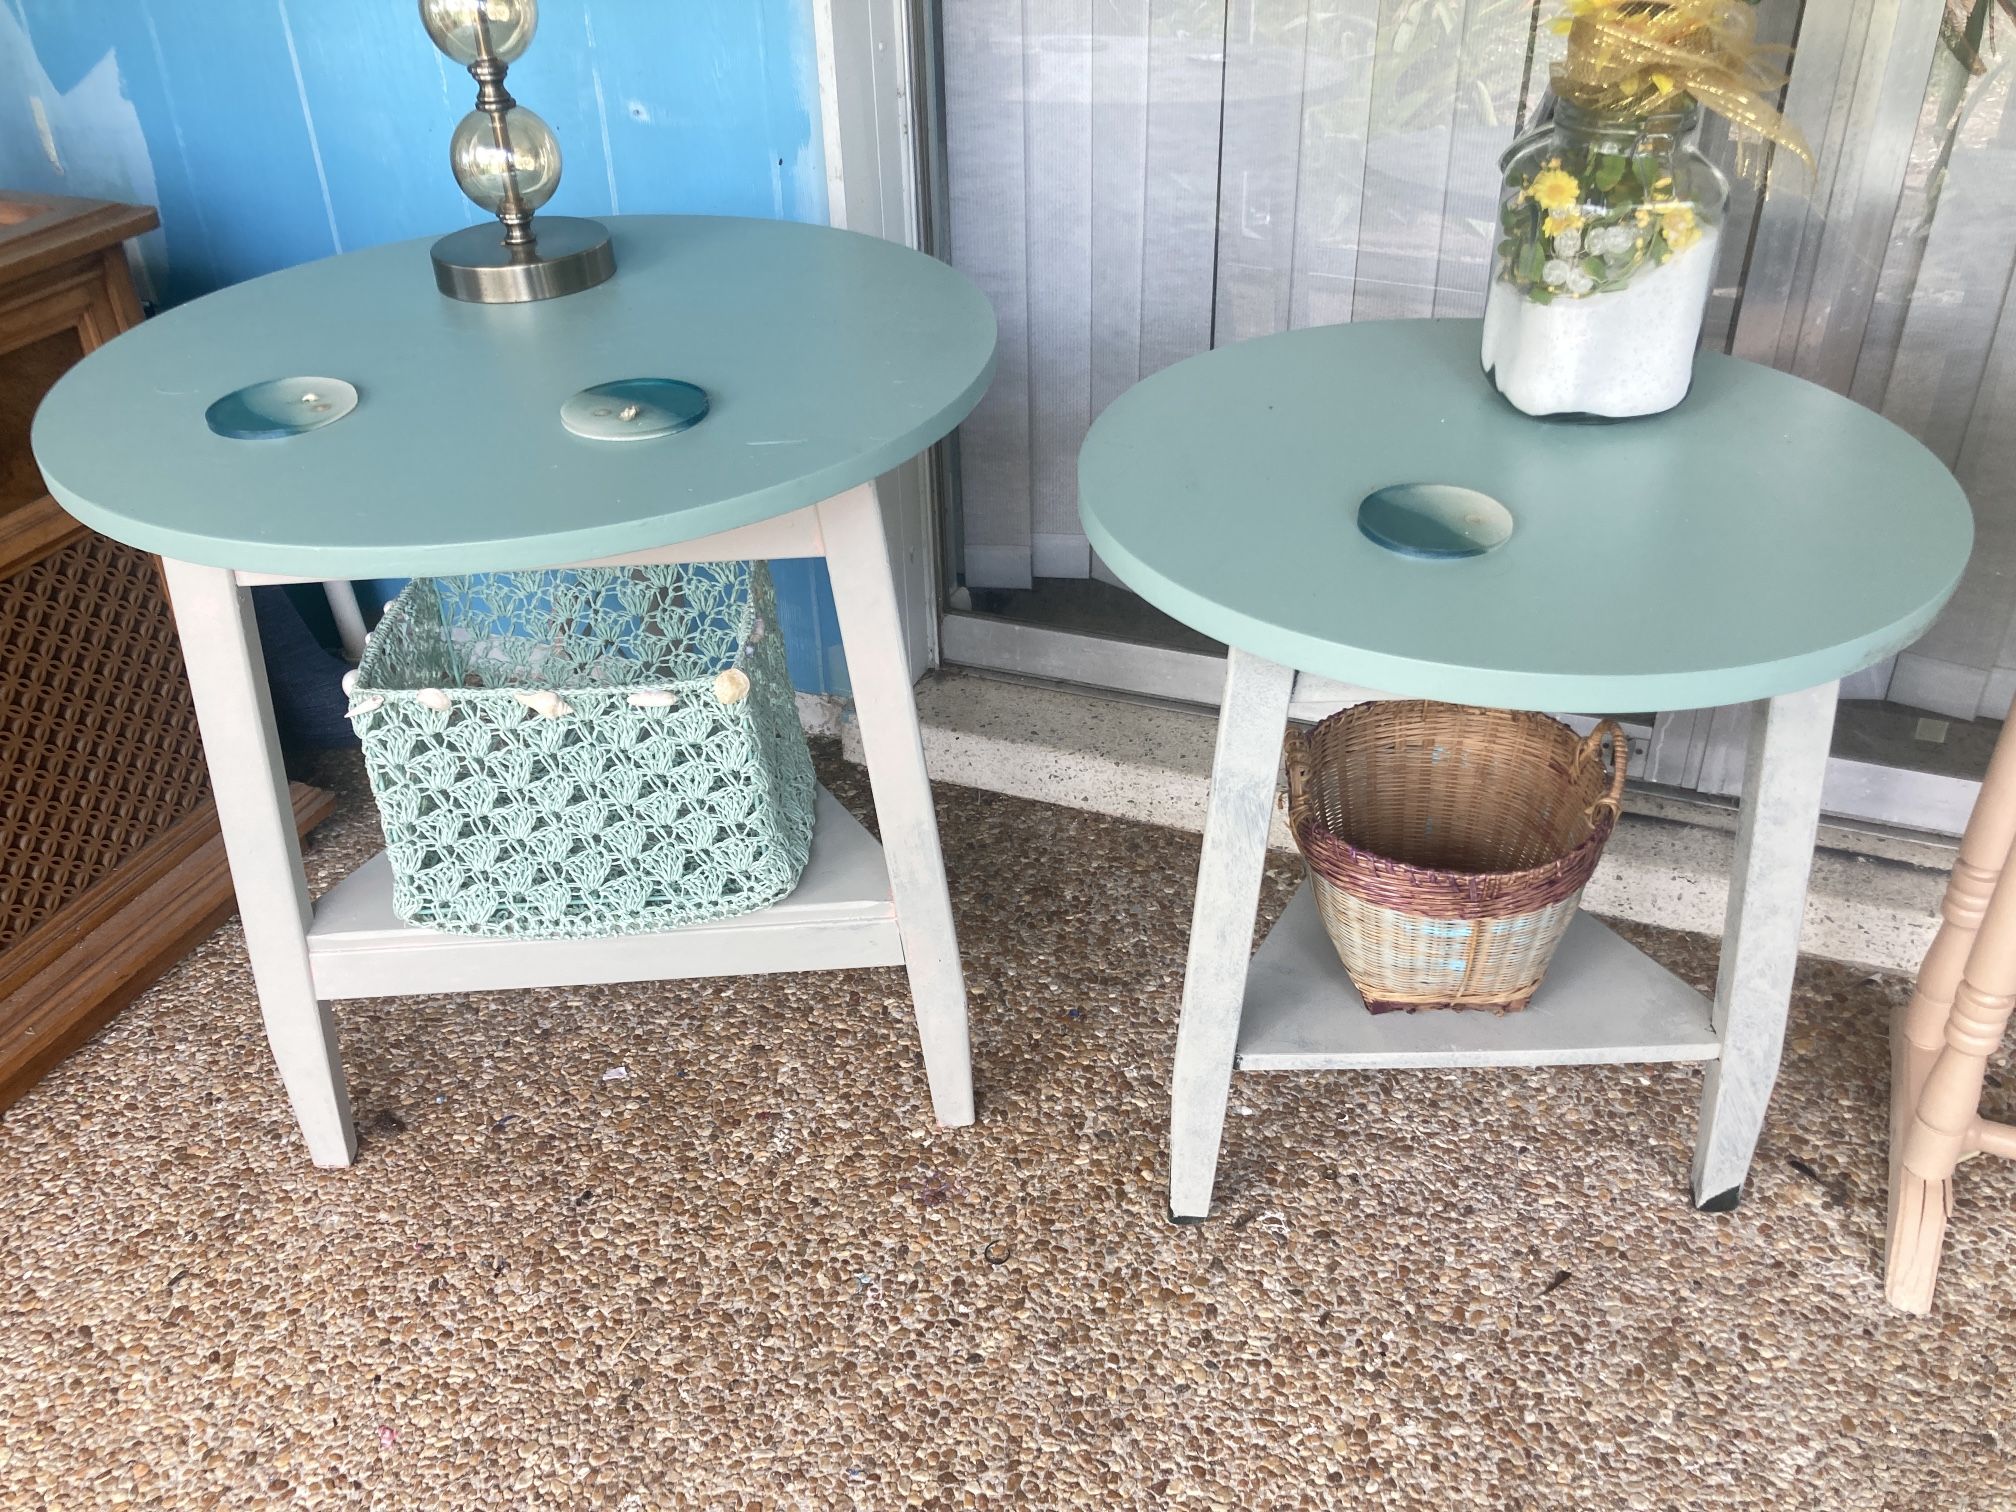 Matching “Lane Furniture” Side Tables